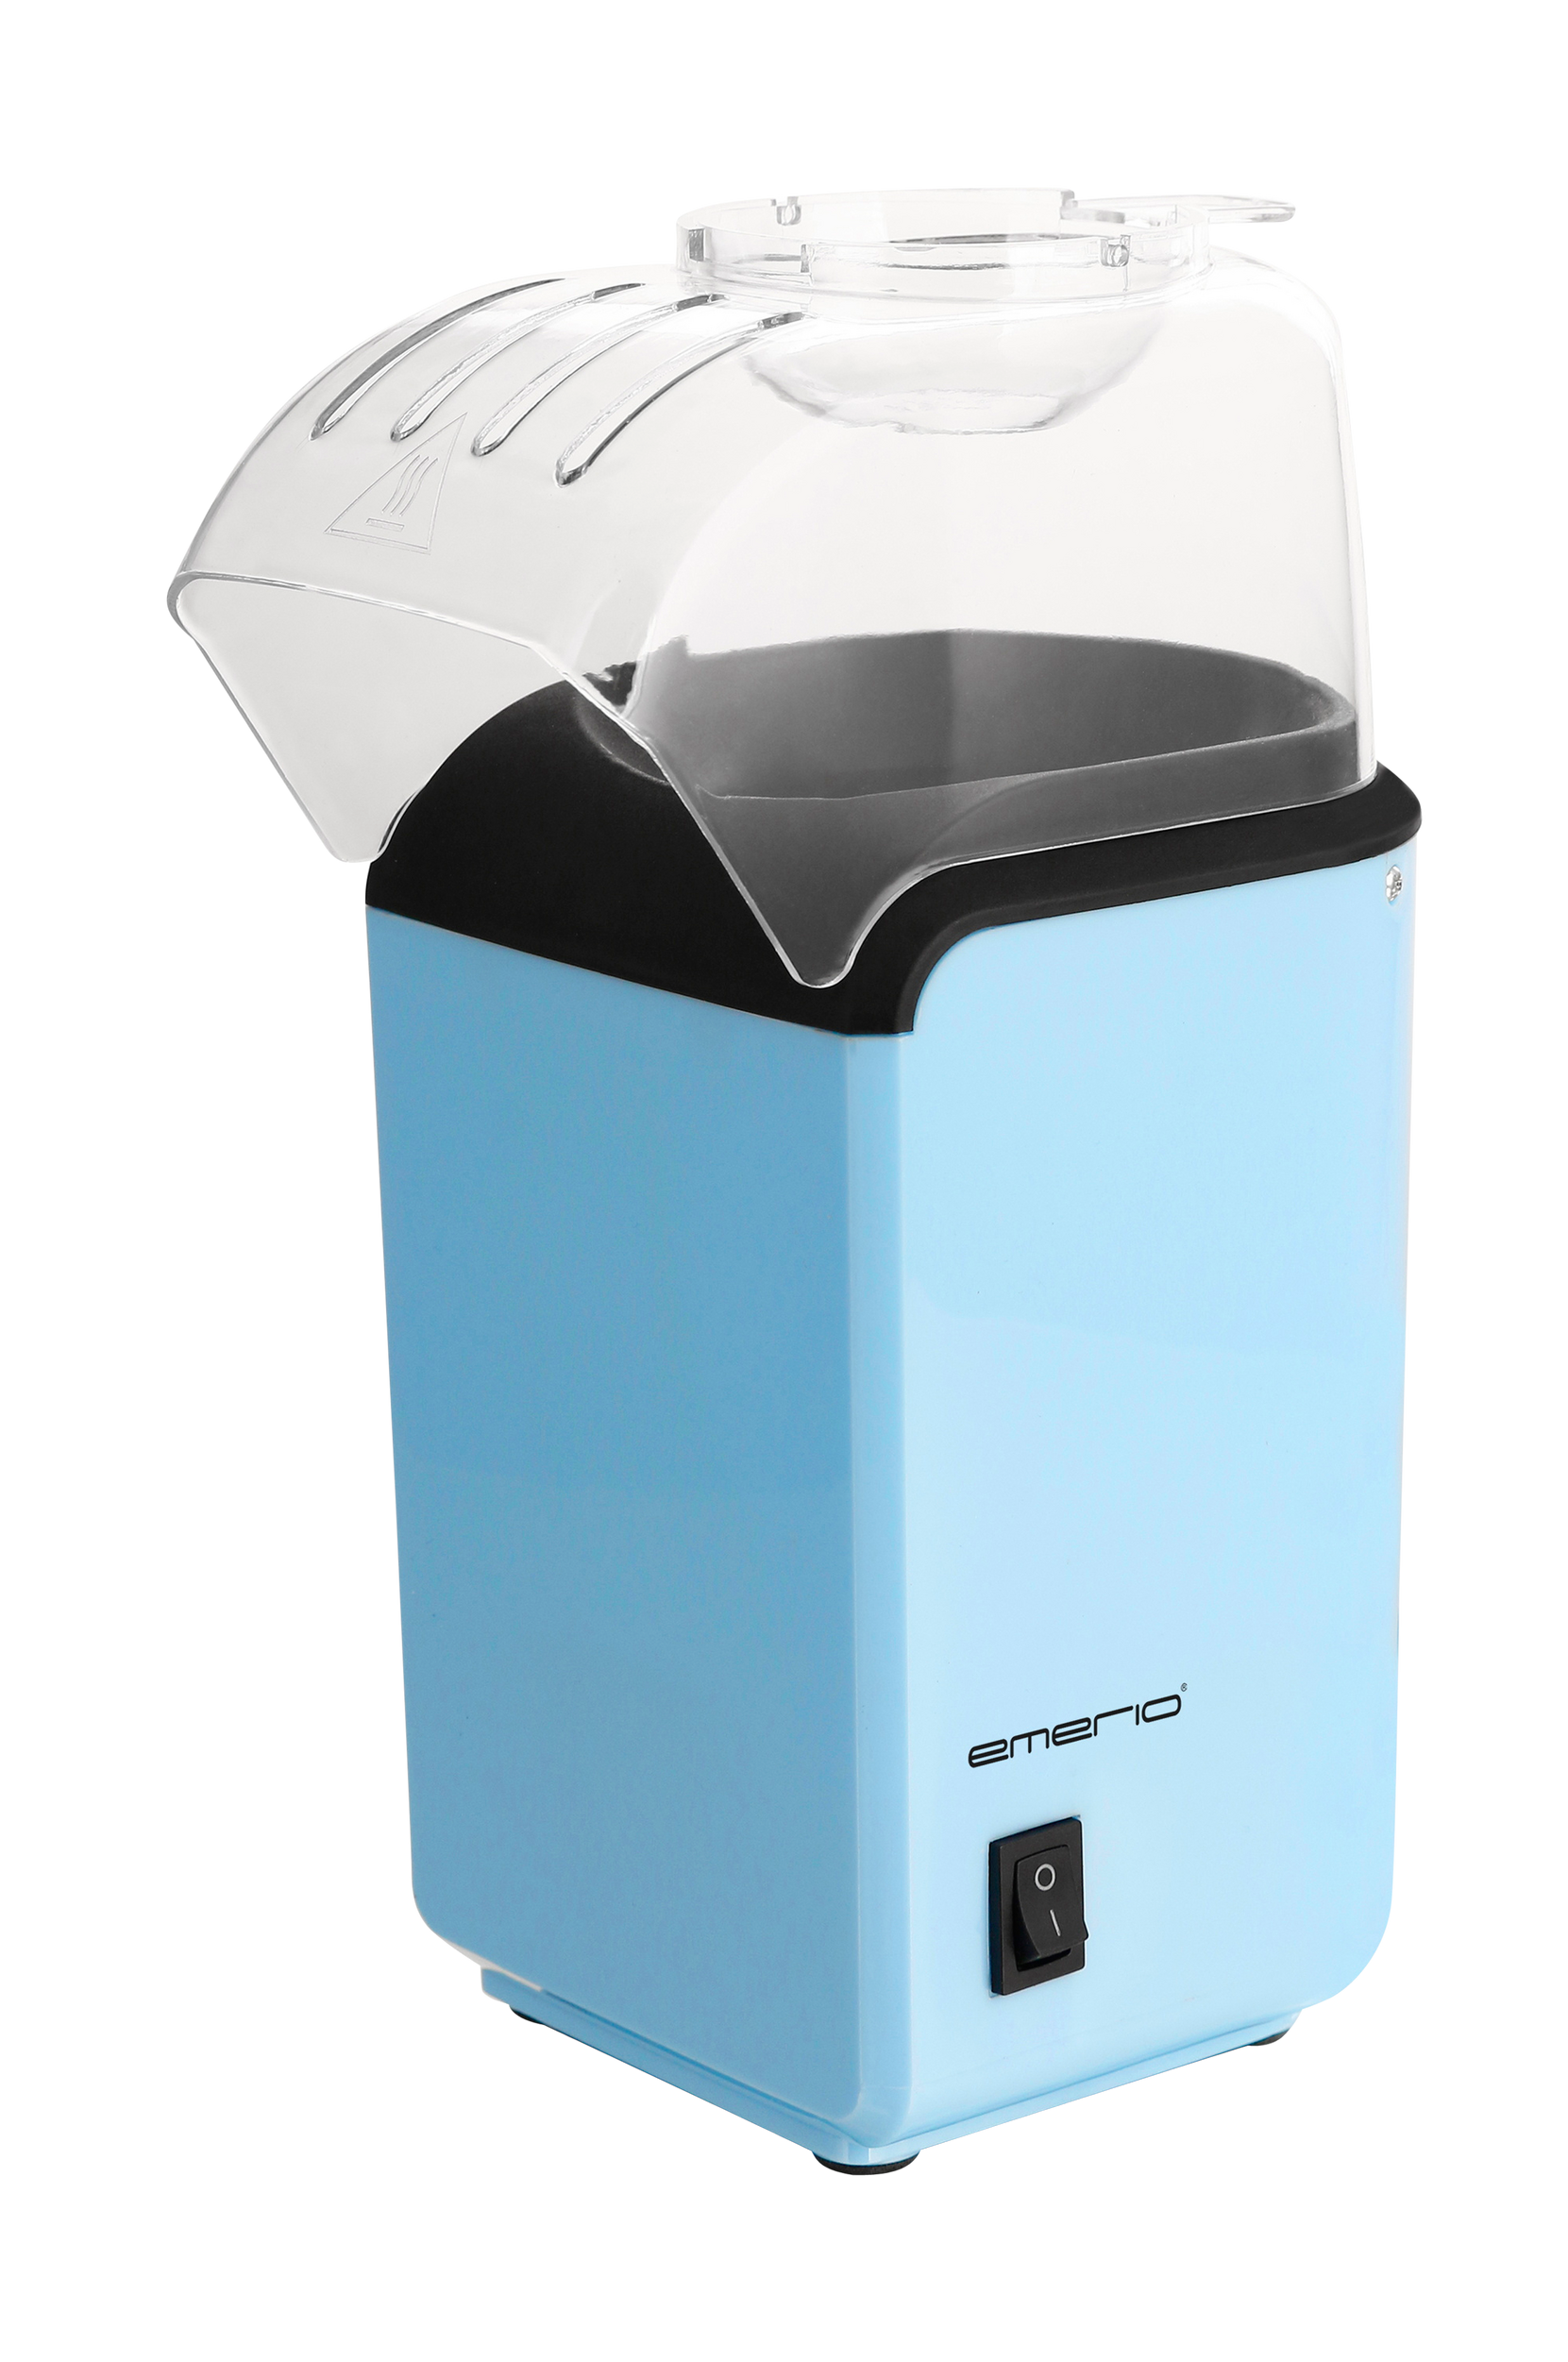 Emerio - Popcorn-maskin - Blå